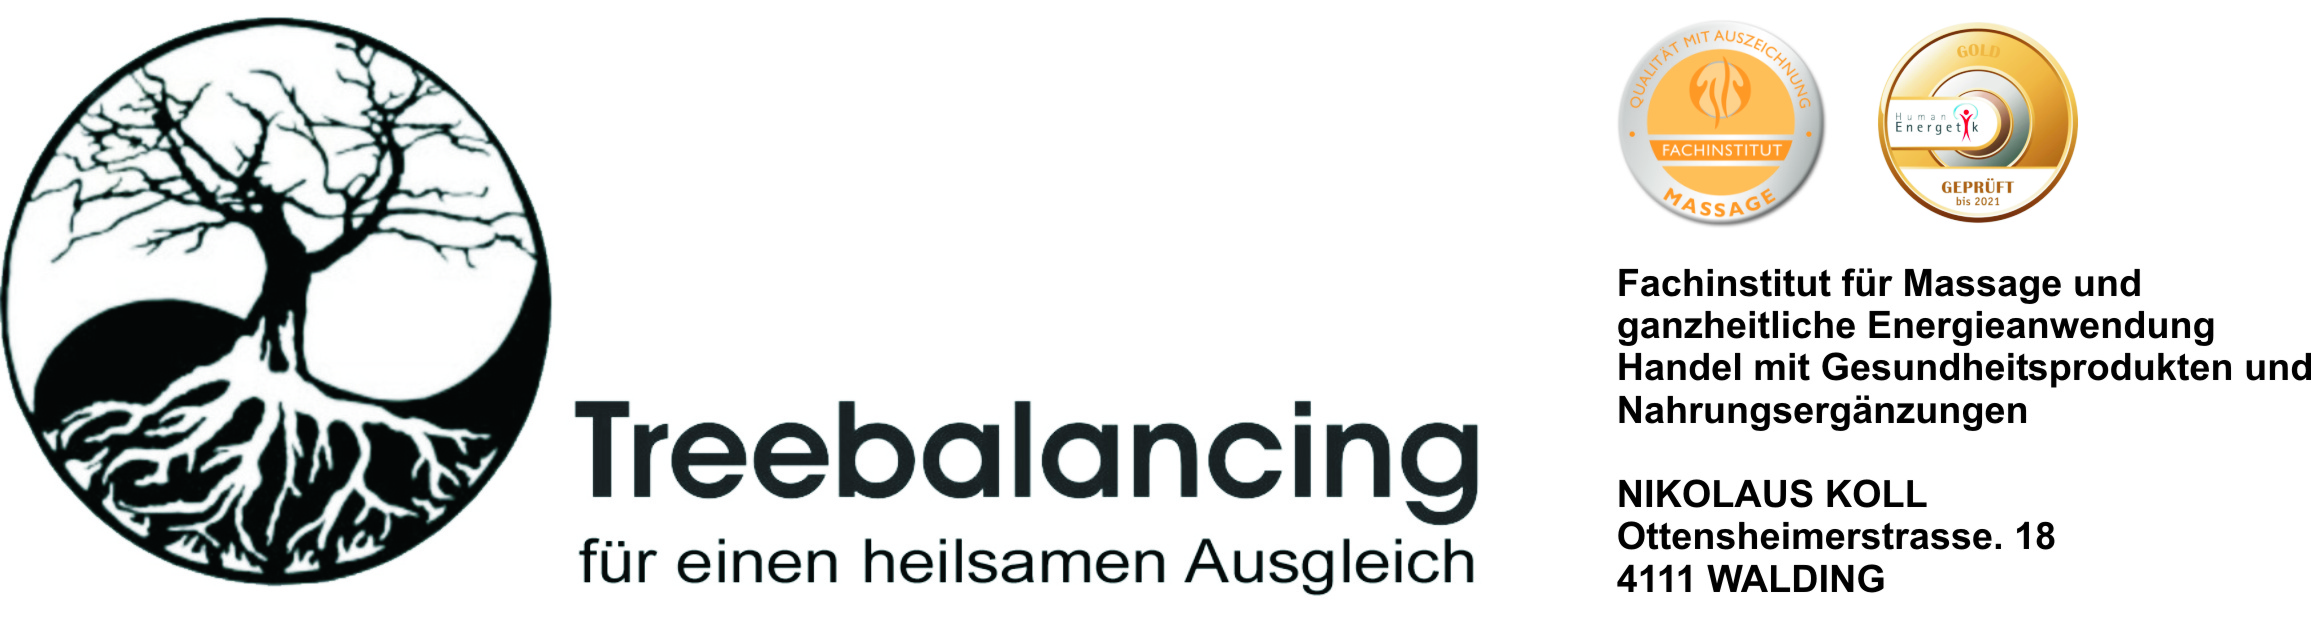 Treebalancing - Fachinstitut für Massage und ganzheitliche Energieanwendungen